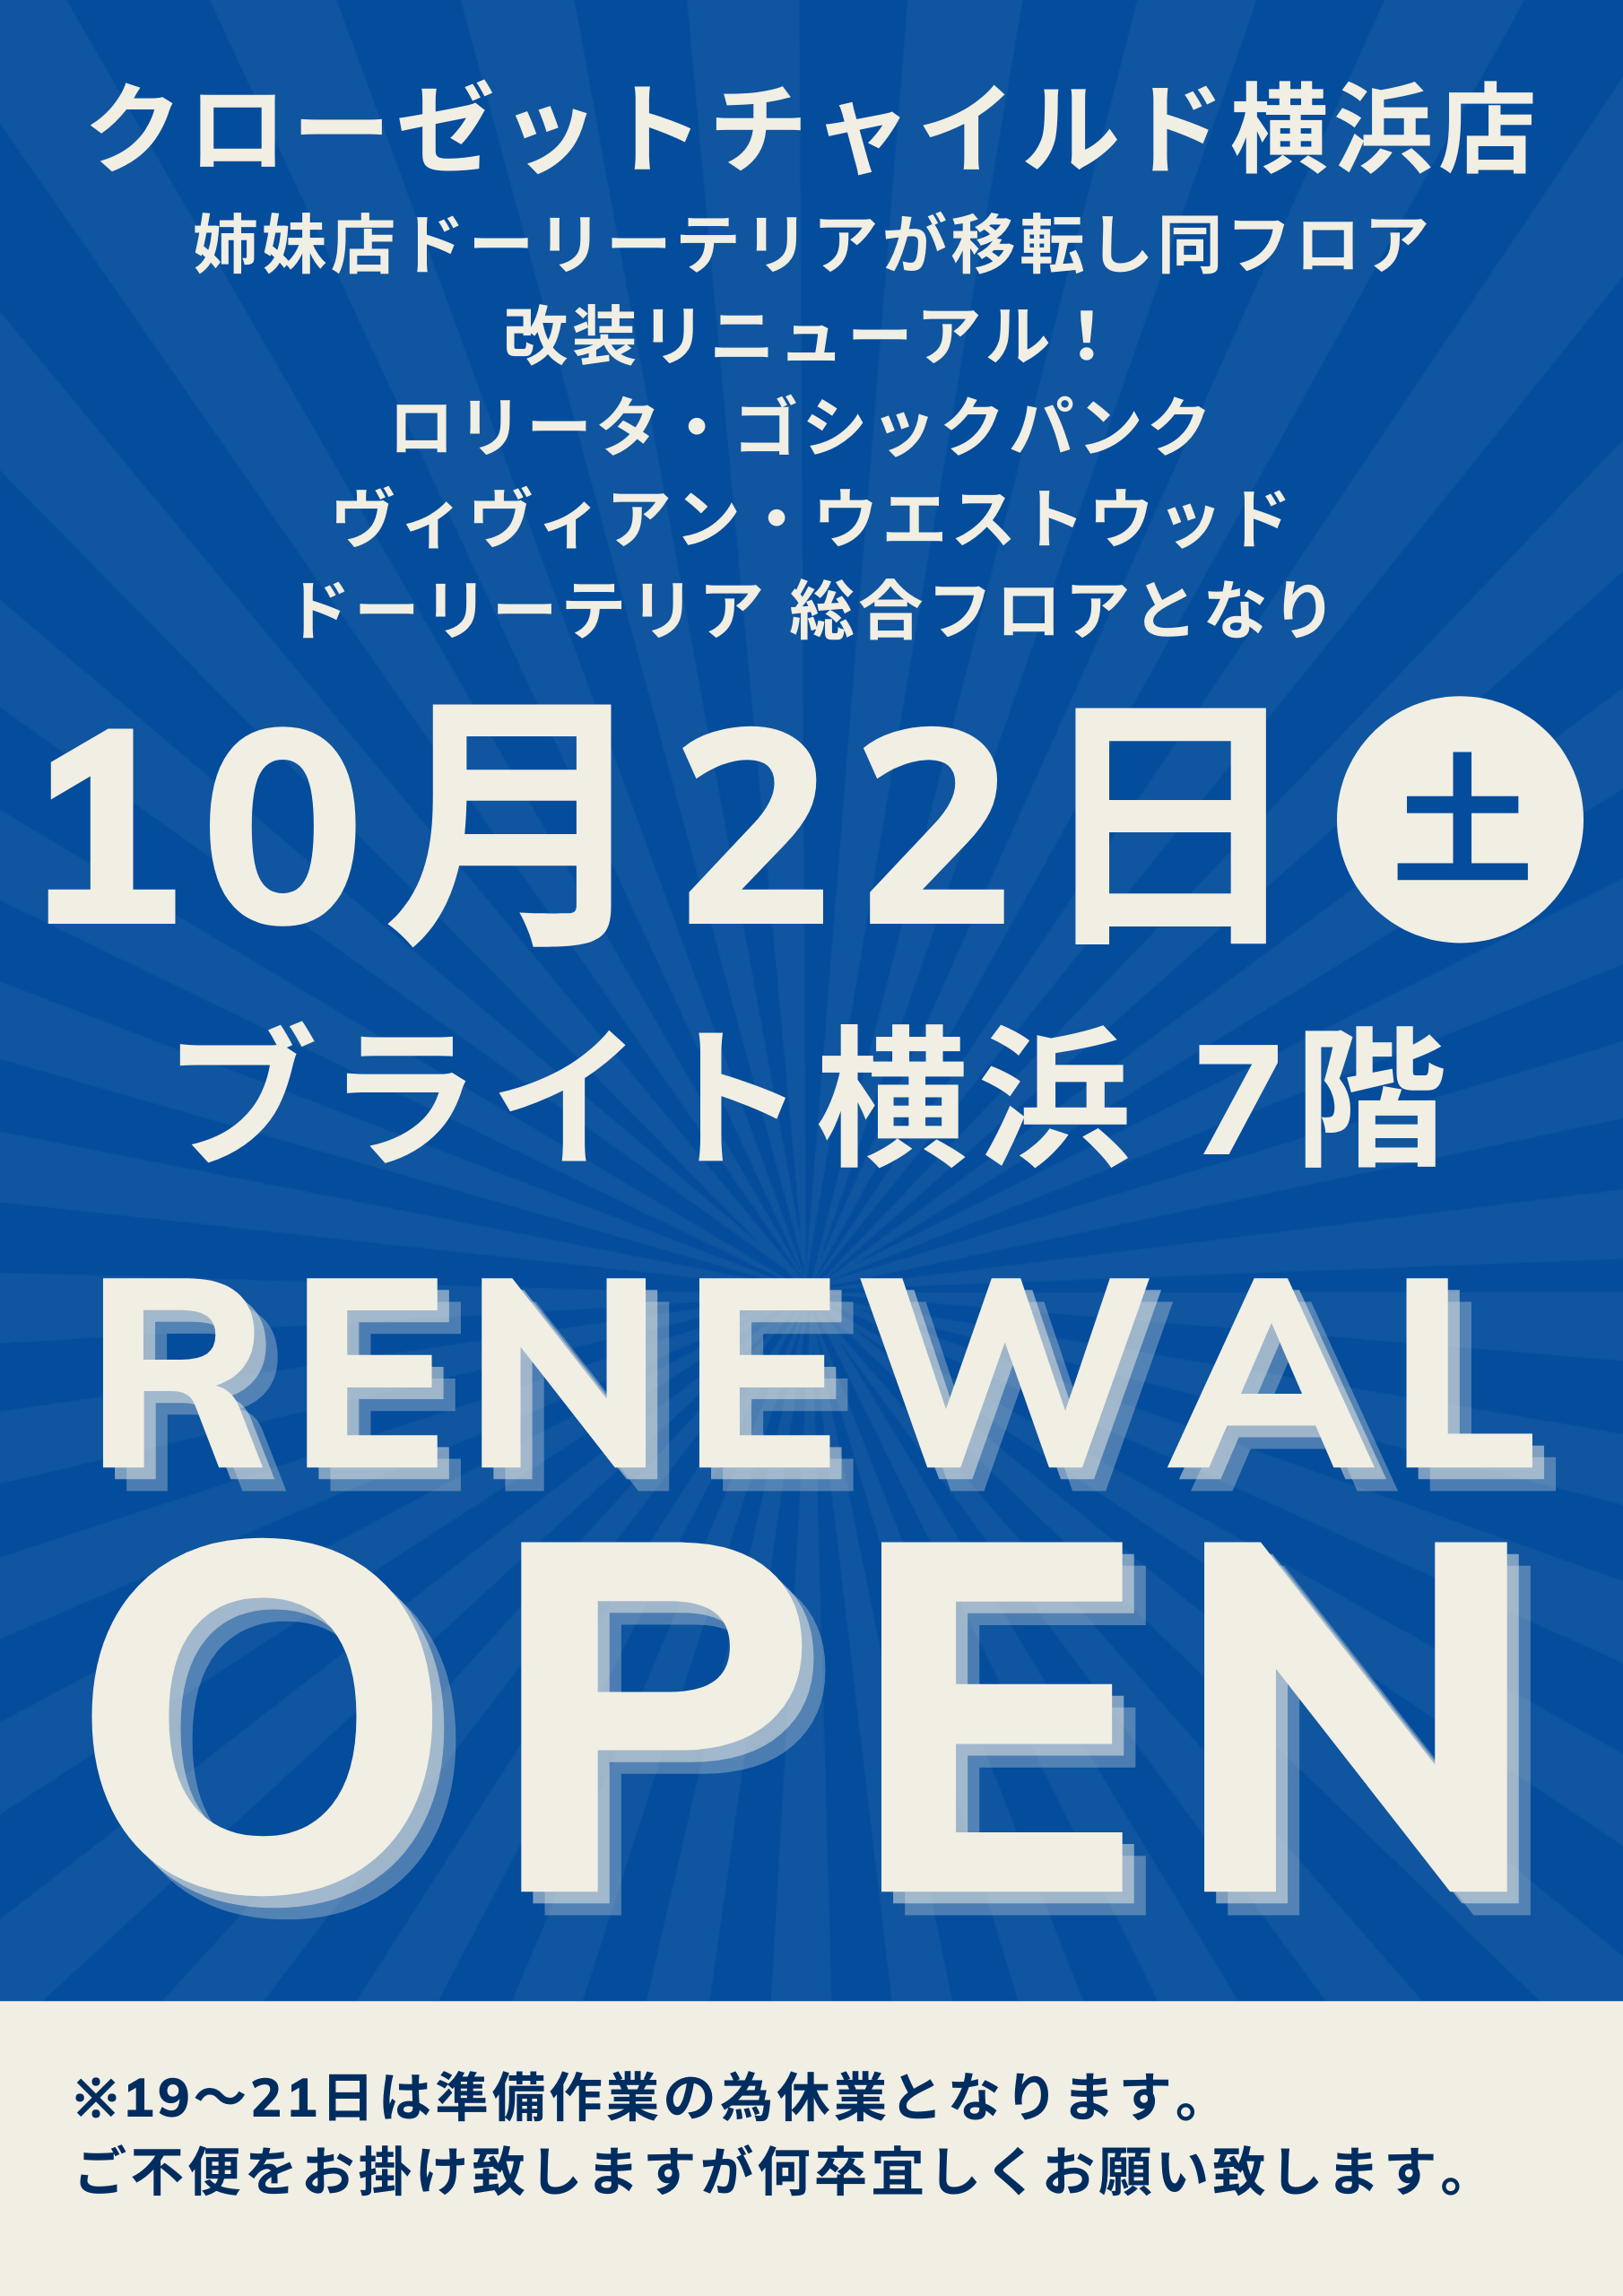 クローゼットチャイルド横浜店10月22日リニューアルオープン